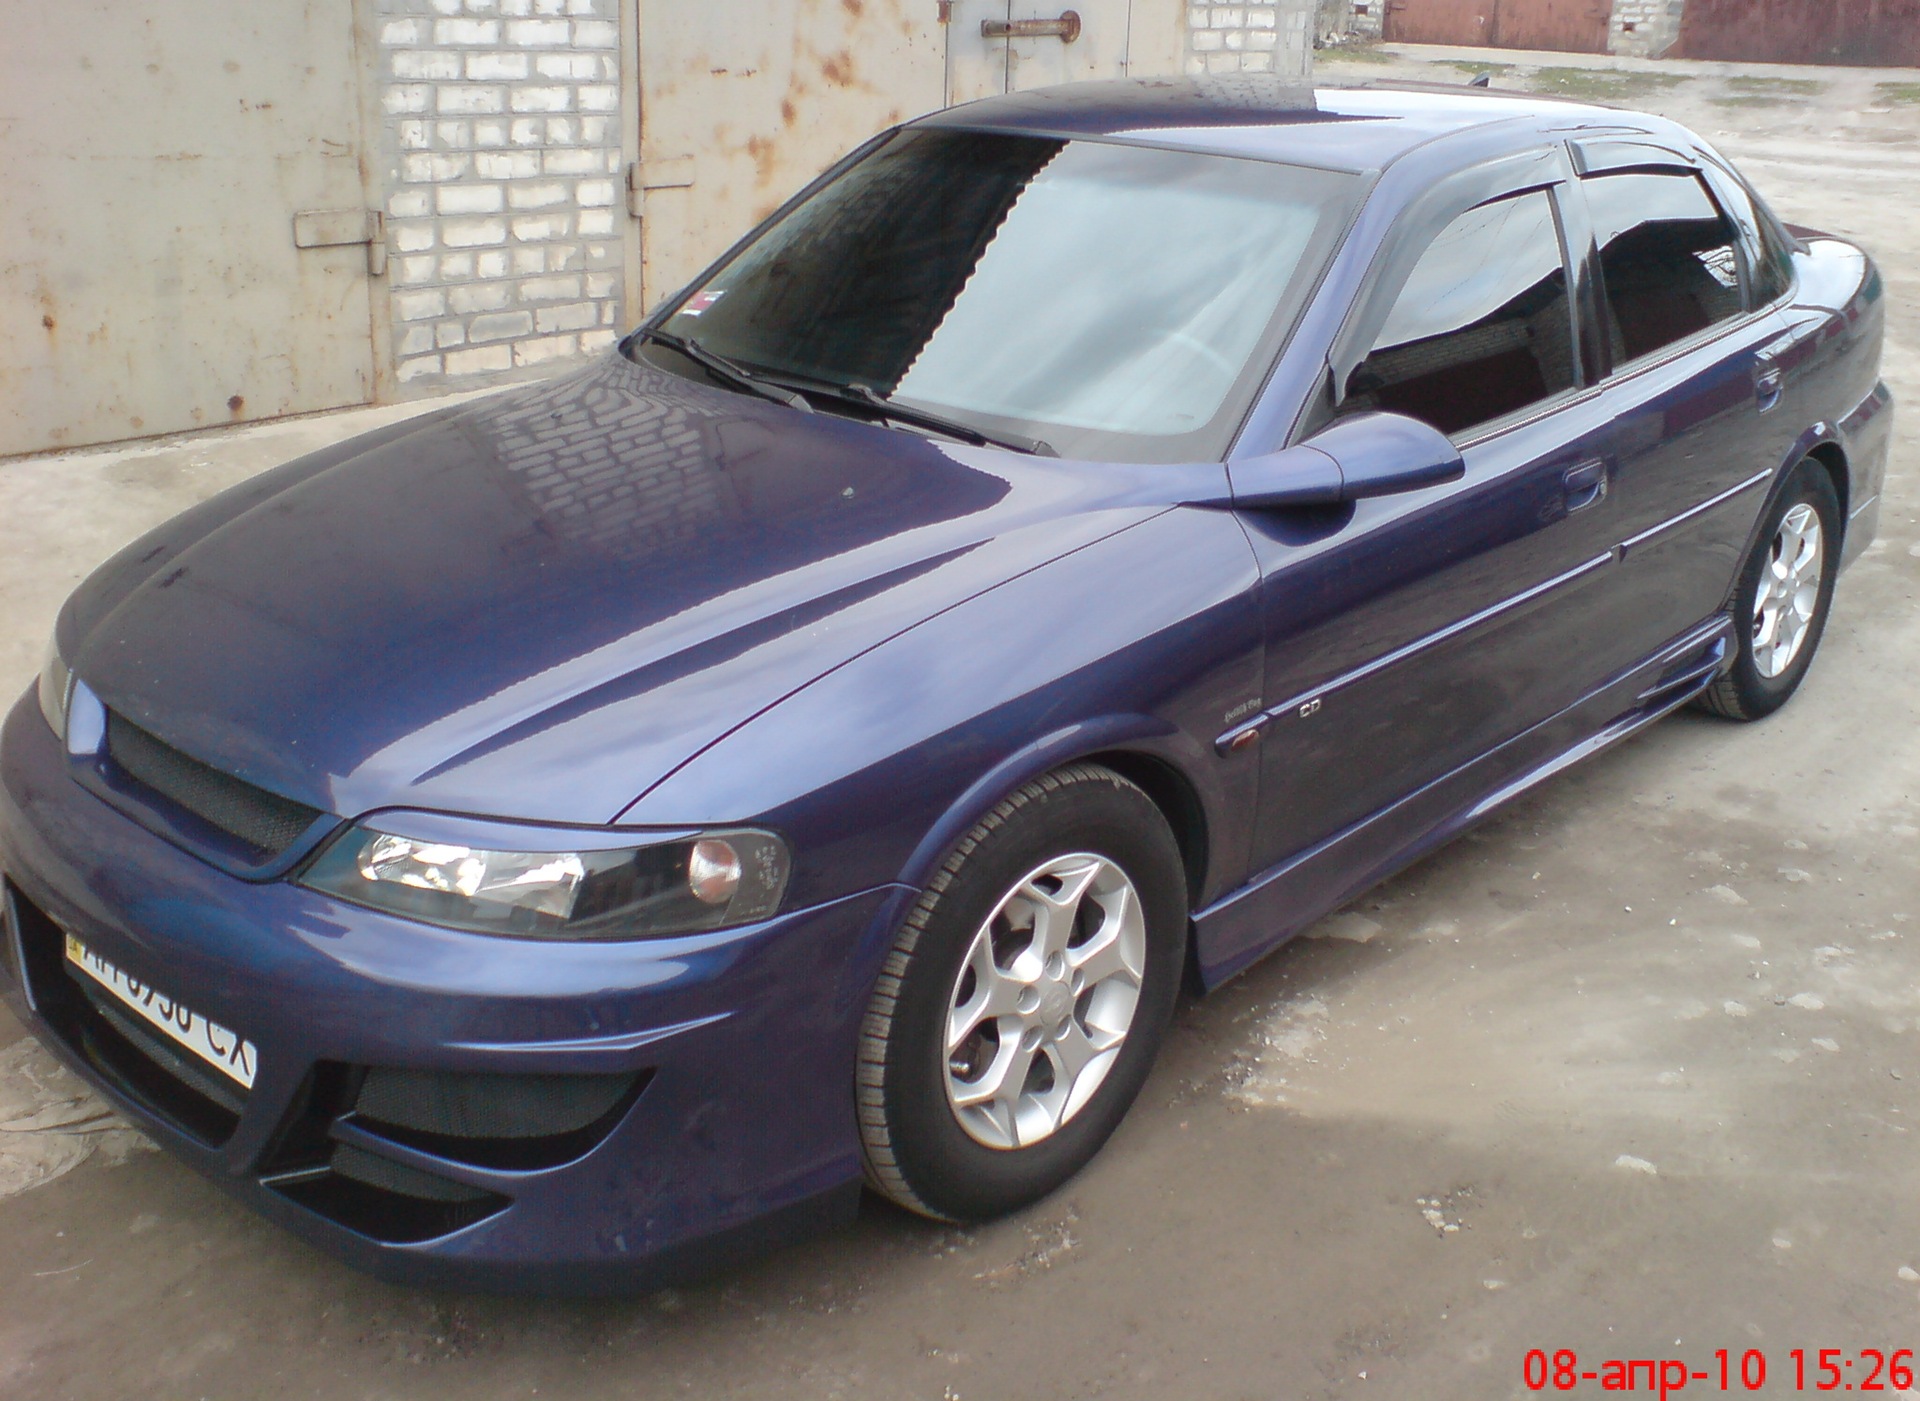 Покажи опель вектра б. Опель Вектра б. Опель Вектра б фиолетовый. Opel Vectra b 2000 Blue. Опель Вектра б синий.